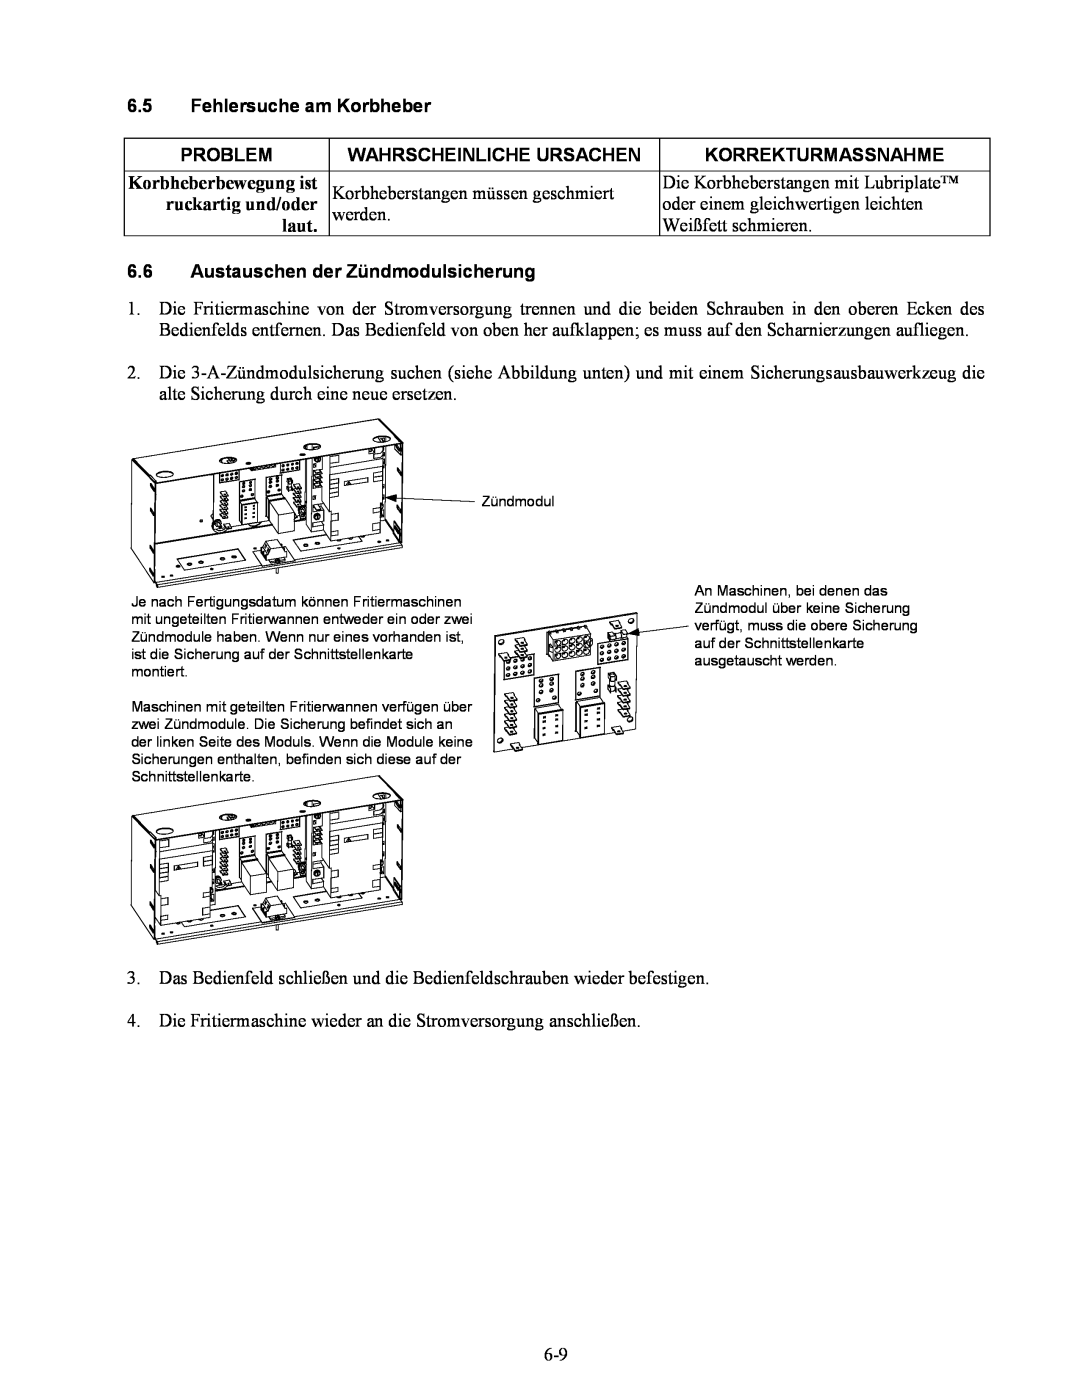 Frymaster Series H50 manual Fehlersuche am Korbheber, Austauschen der Zündmodulsicherung, Problem, Wahrscheinliche Ursachen 